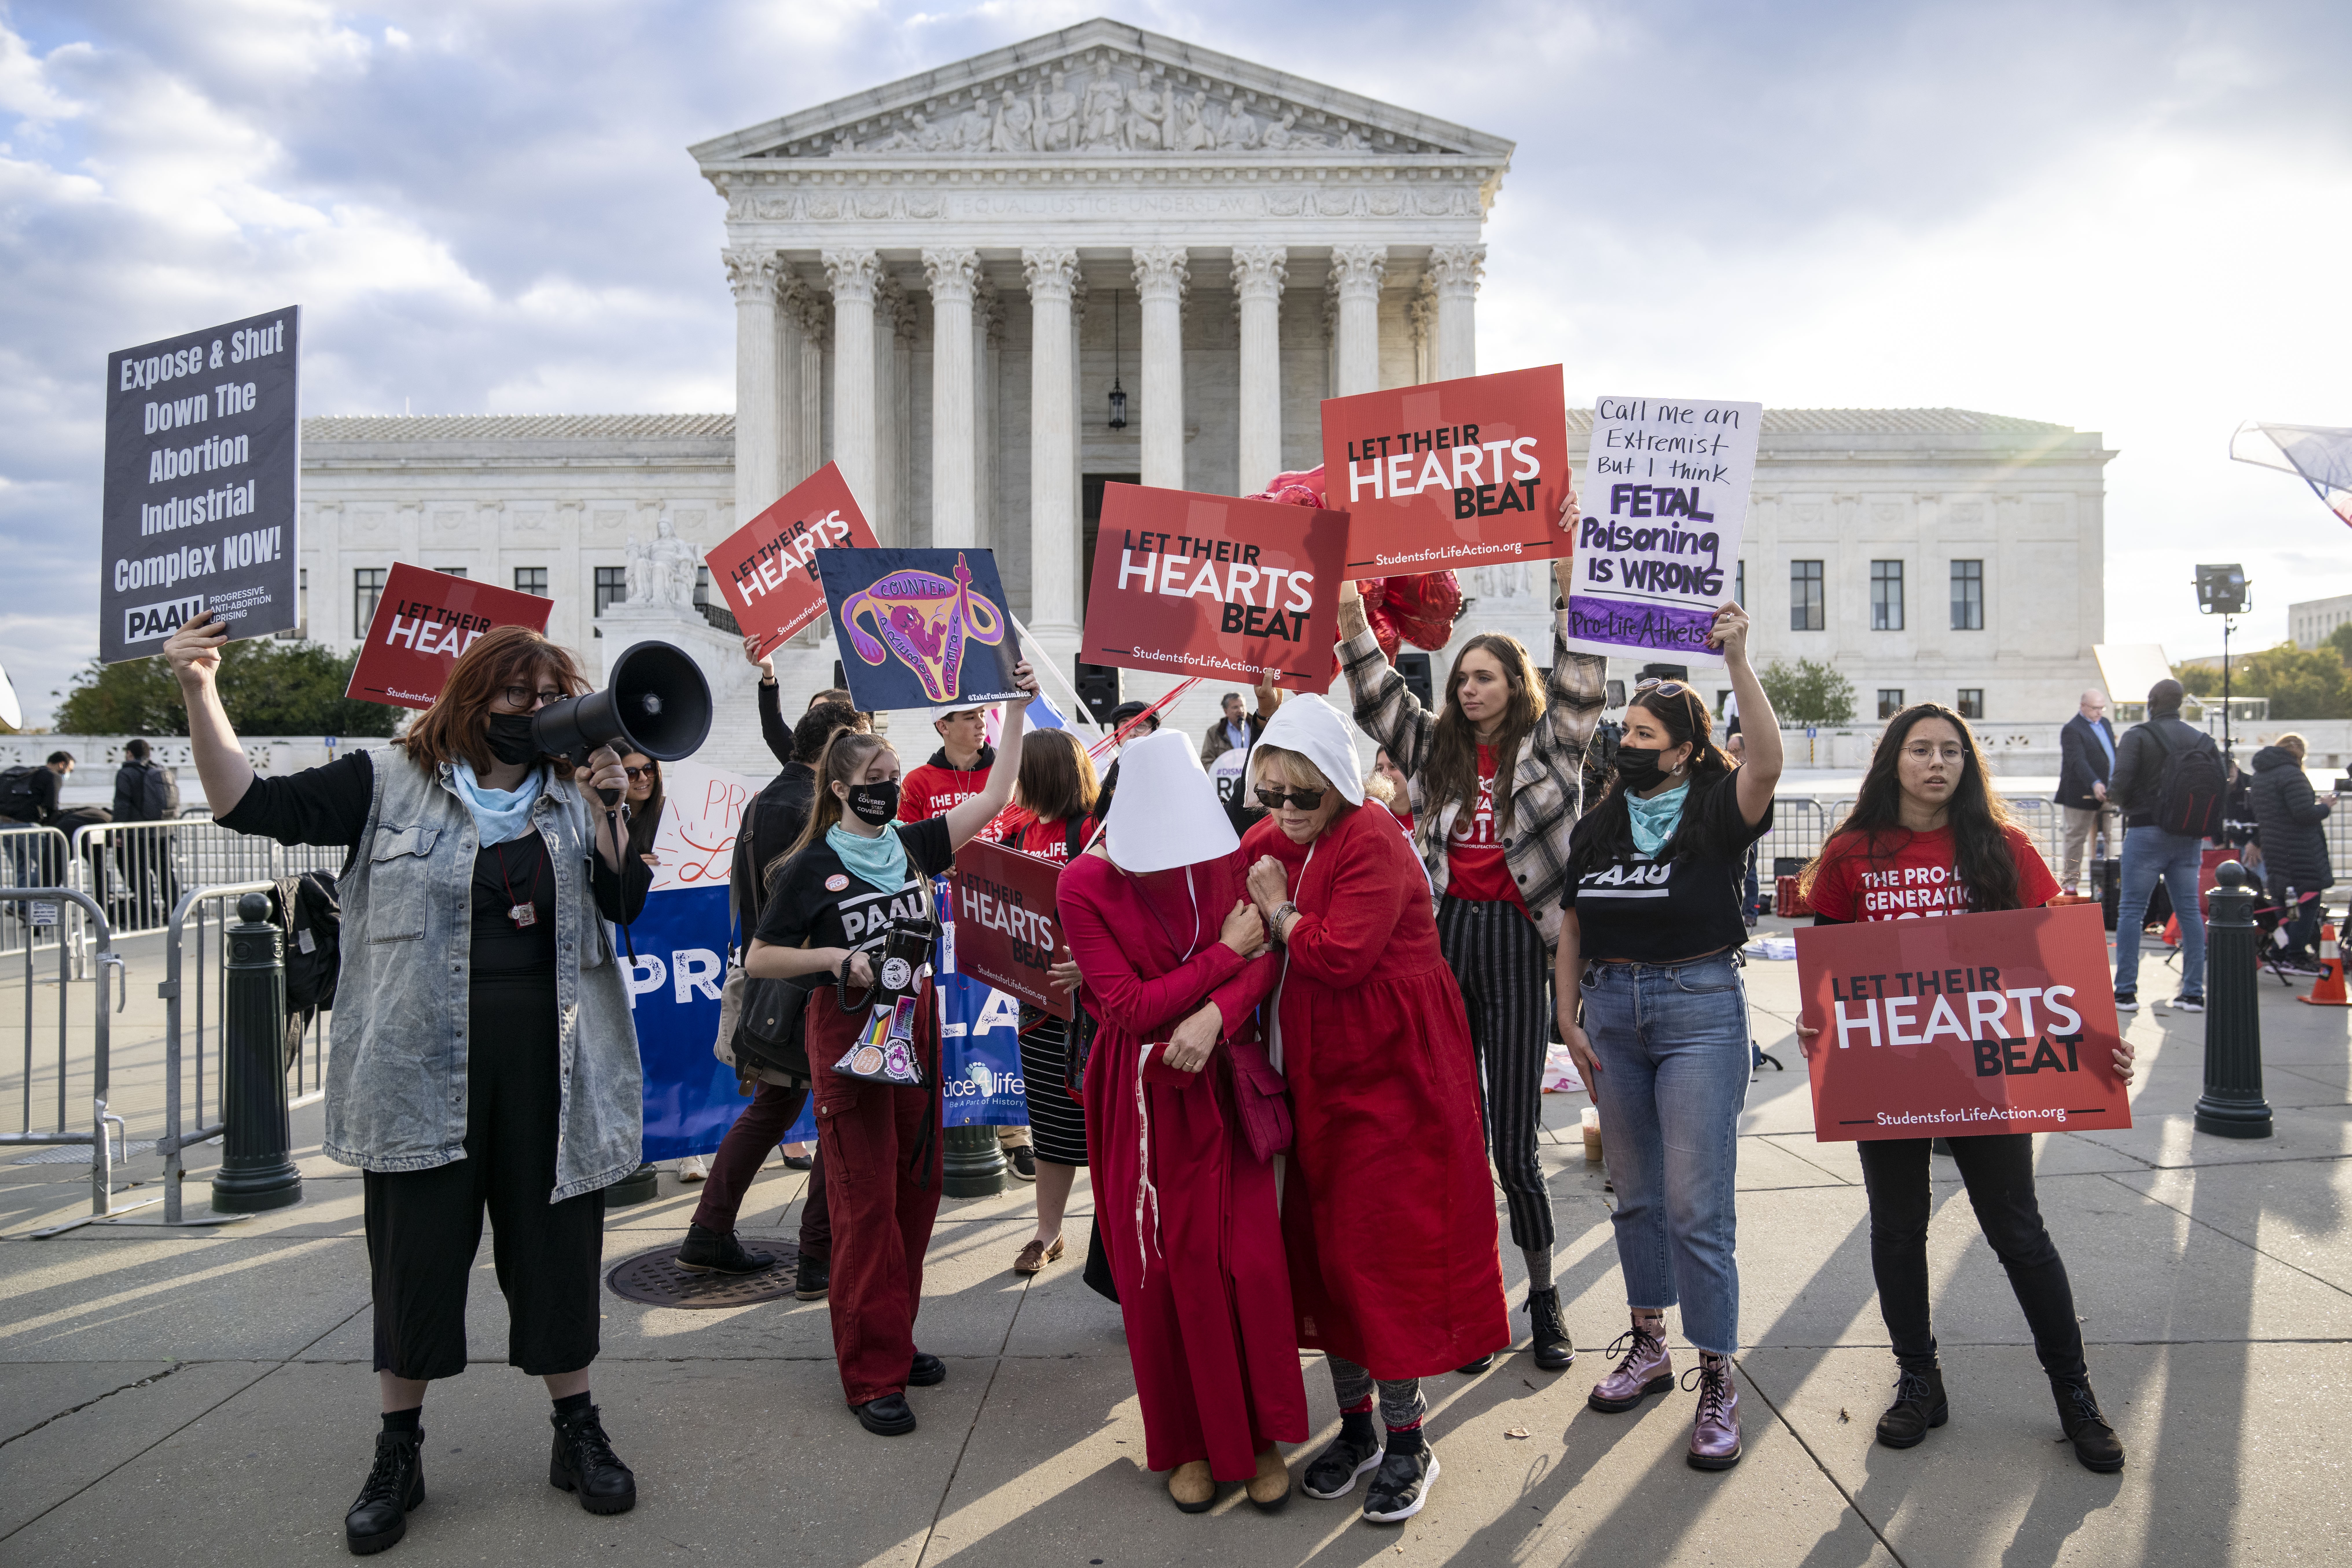 Protesto na frente da Suprema Corte, nos EUA, em novembro de 2021, que reuniu pessoas contrárias e a favor do aborto (Foto:  Drew Angerer/Getty Images)